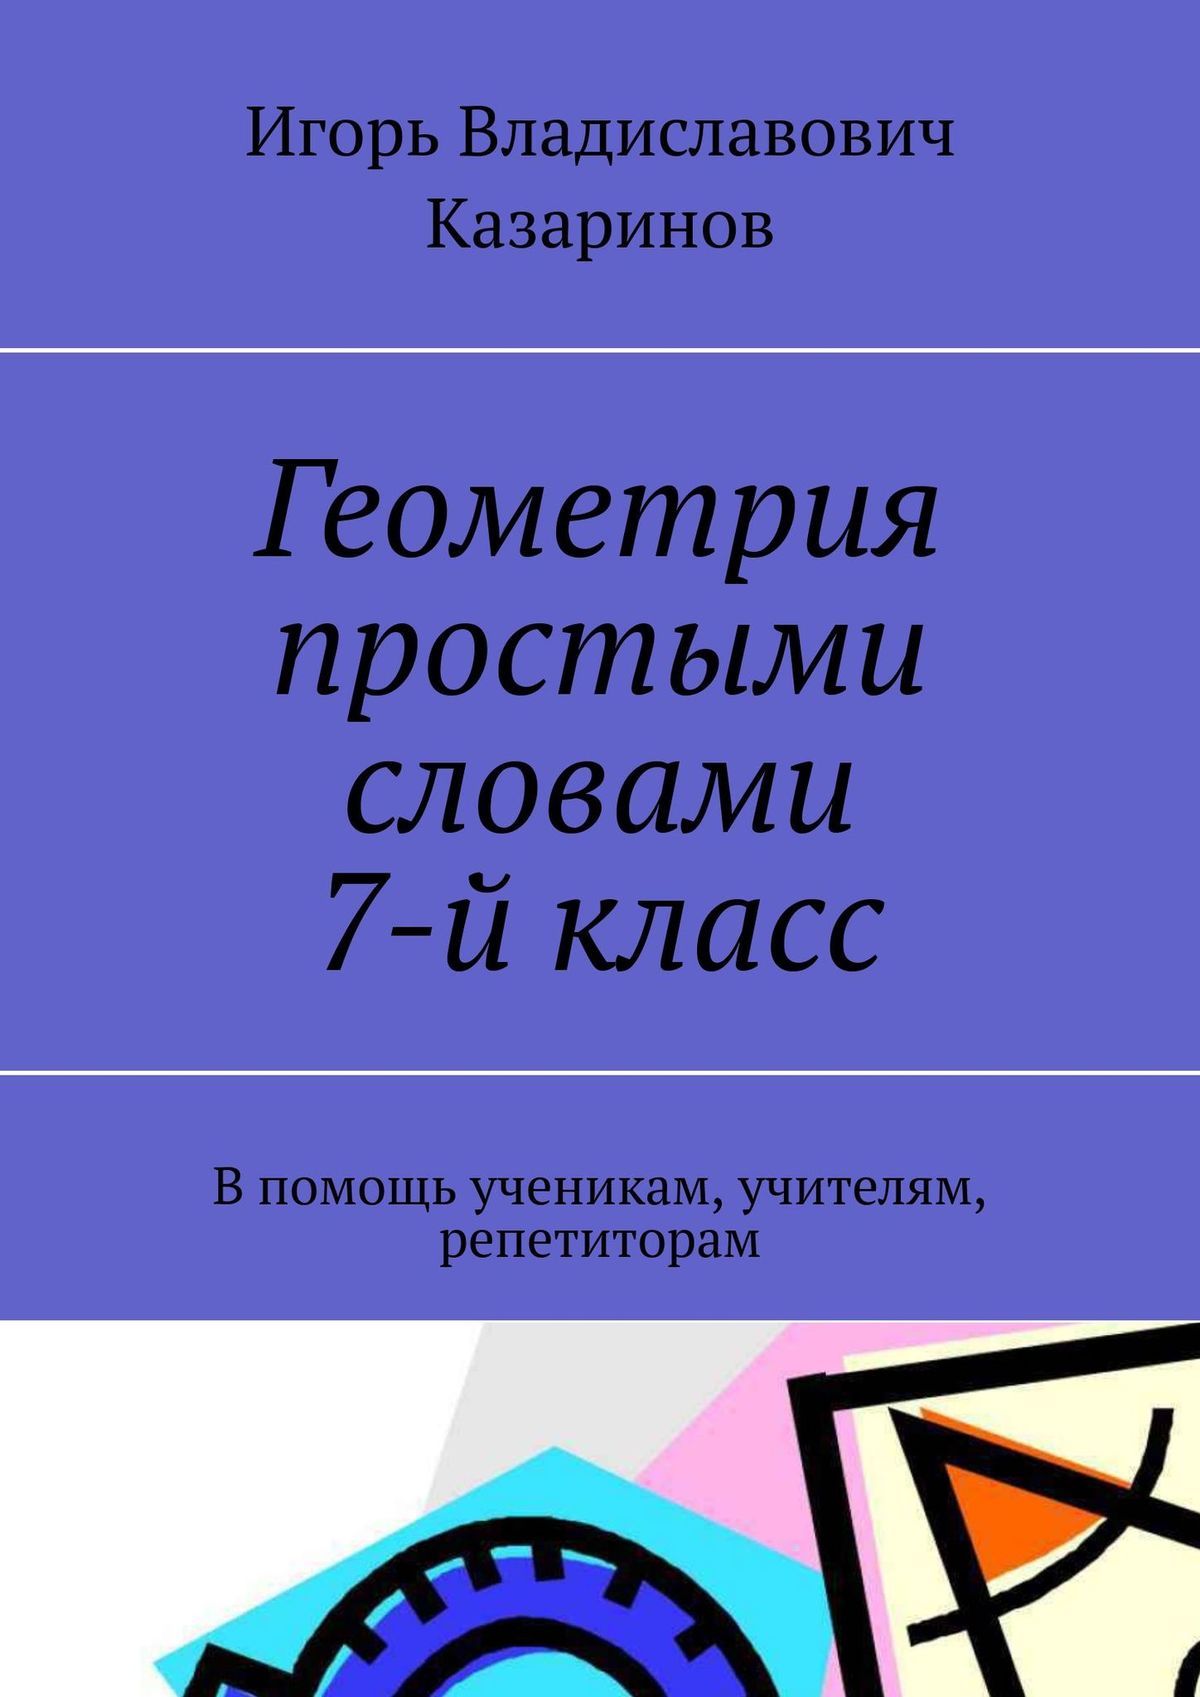 Книга Геометрия простыми словами. 7 класс из серии , созданная Игорь Казаринов, может относится к жанру Математика. Стоимость книги Геометрия простыми словами. 7 класс  с идентификатором 38977073 составляет 96.00 руб.